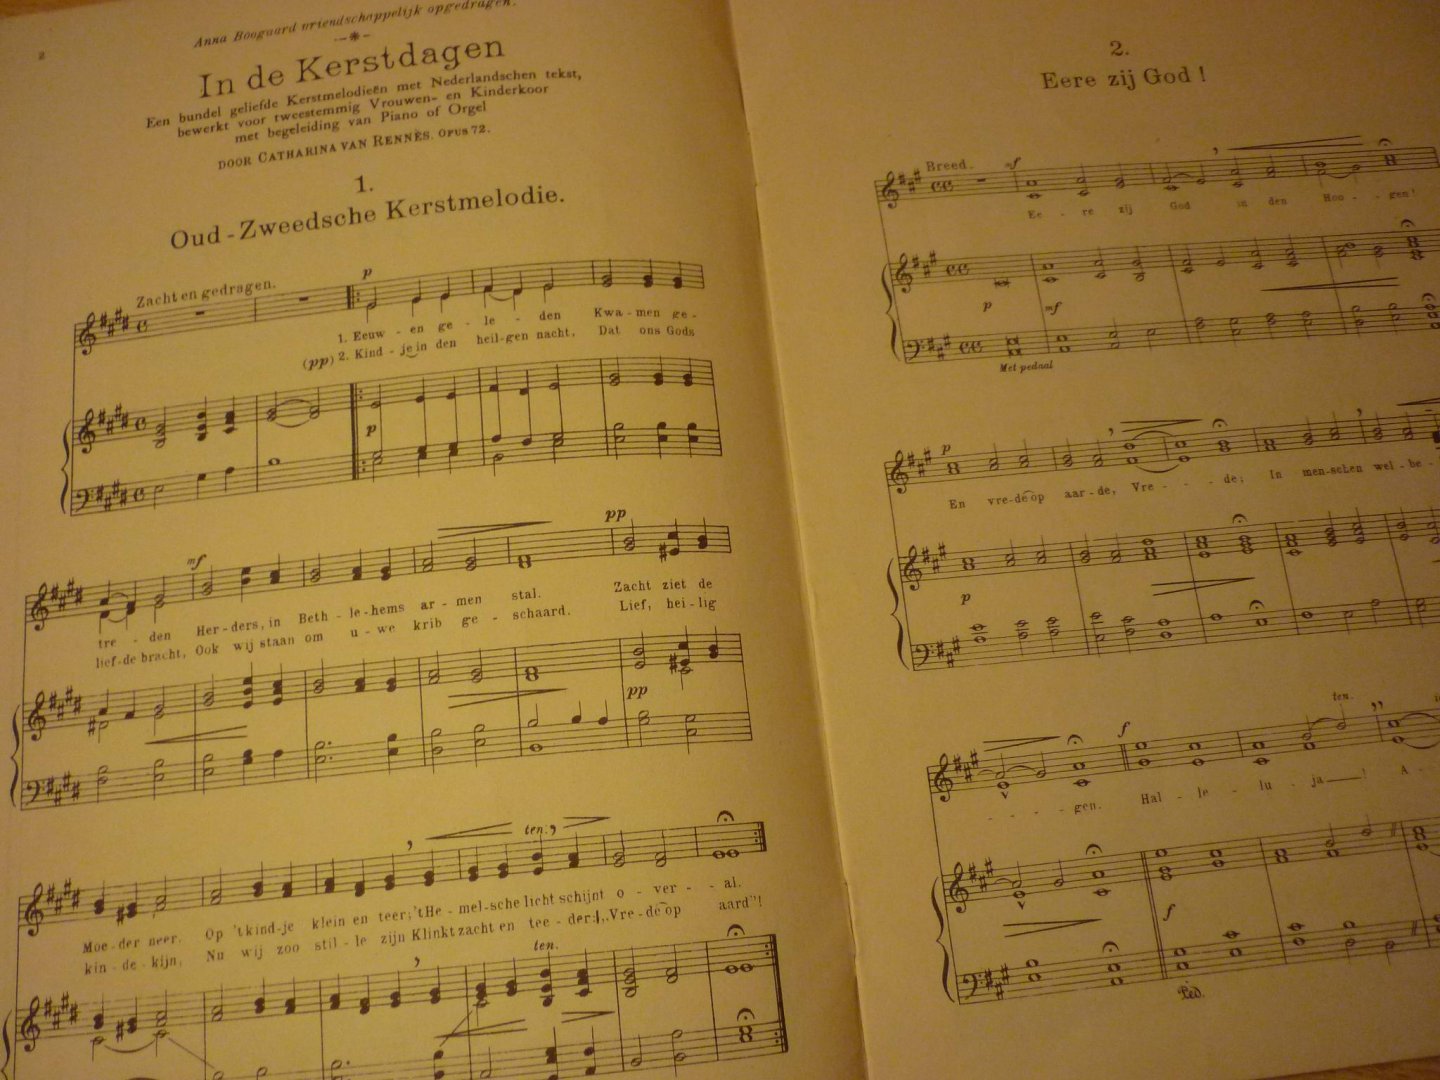 Rennes; Catharina van - In de Kerstdagen; Opus 72; Bundel met geliefde Kerstmelodieën met Hollandse tekst; bewerkt voor tweestemmig vrouwenkoor, met piano of orgel